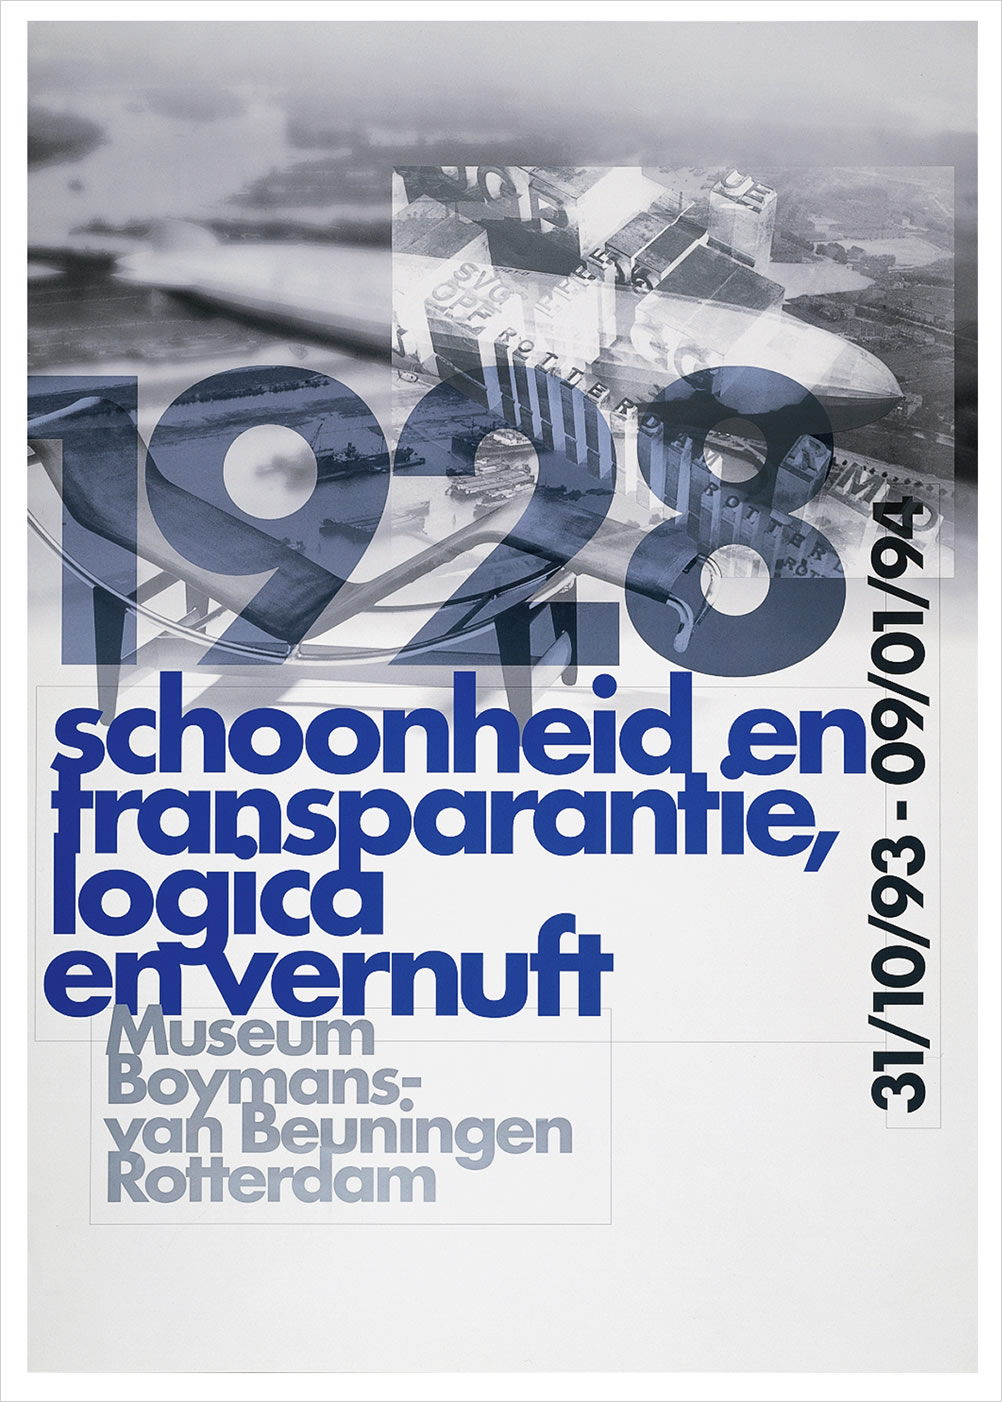 Museum Boymans-van Beuningen, Rotterdam.'1928: schoonheid en transparantie, logica en vernuft', poster. Design: 8vo, 1993